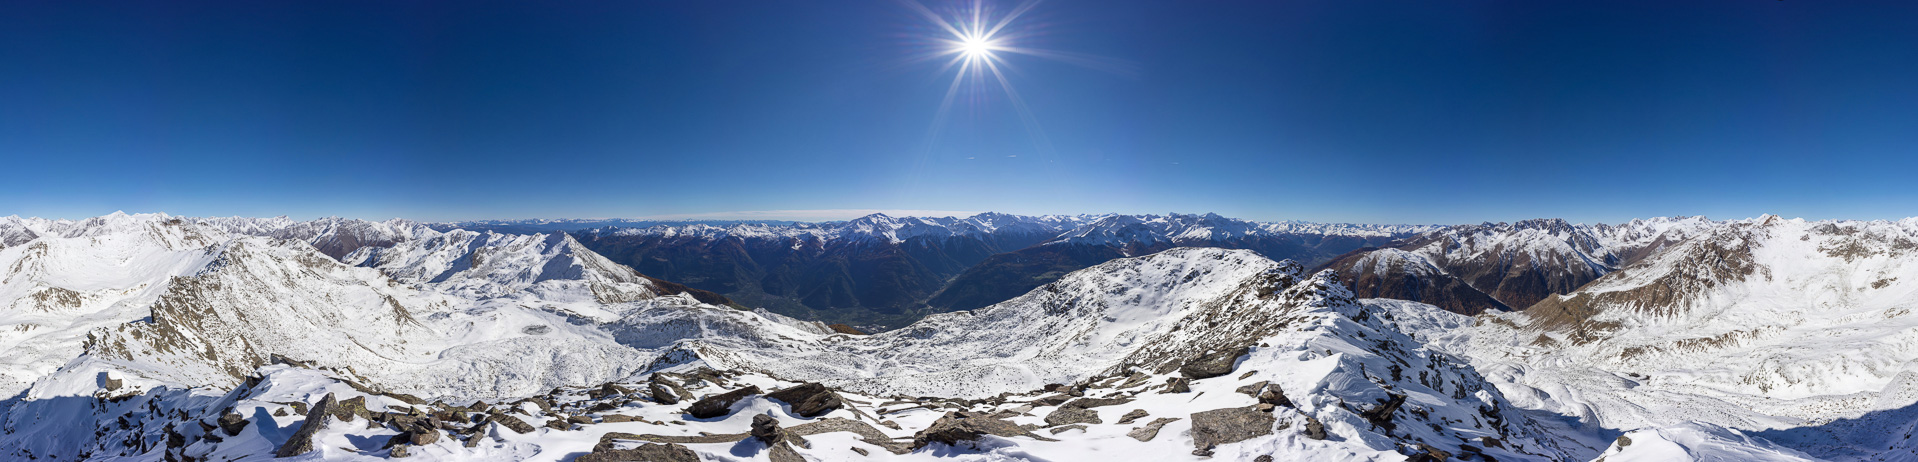 Prächtiges Gipfelpanorama von der Bernina bis zu den Dolomiten.